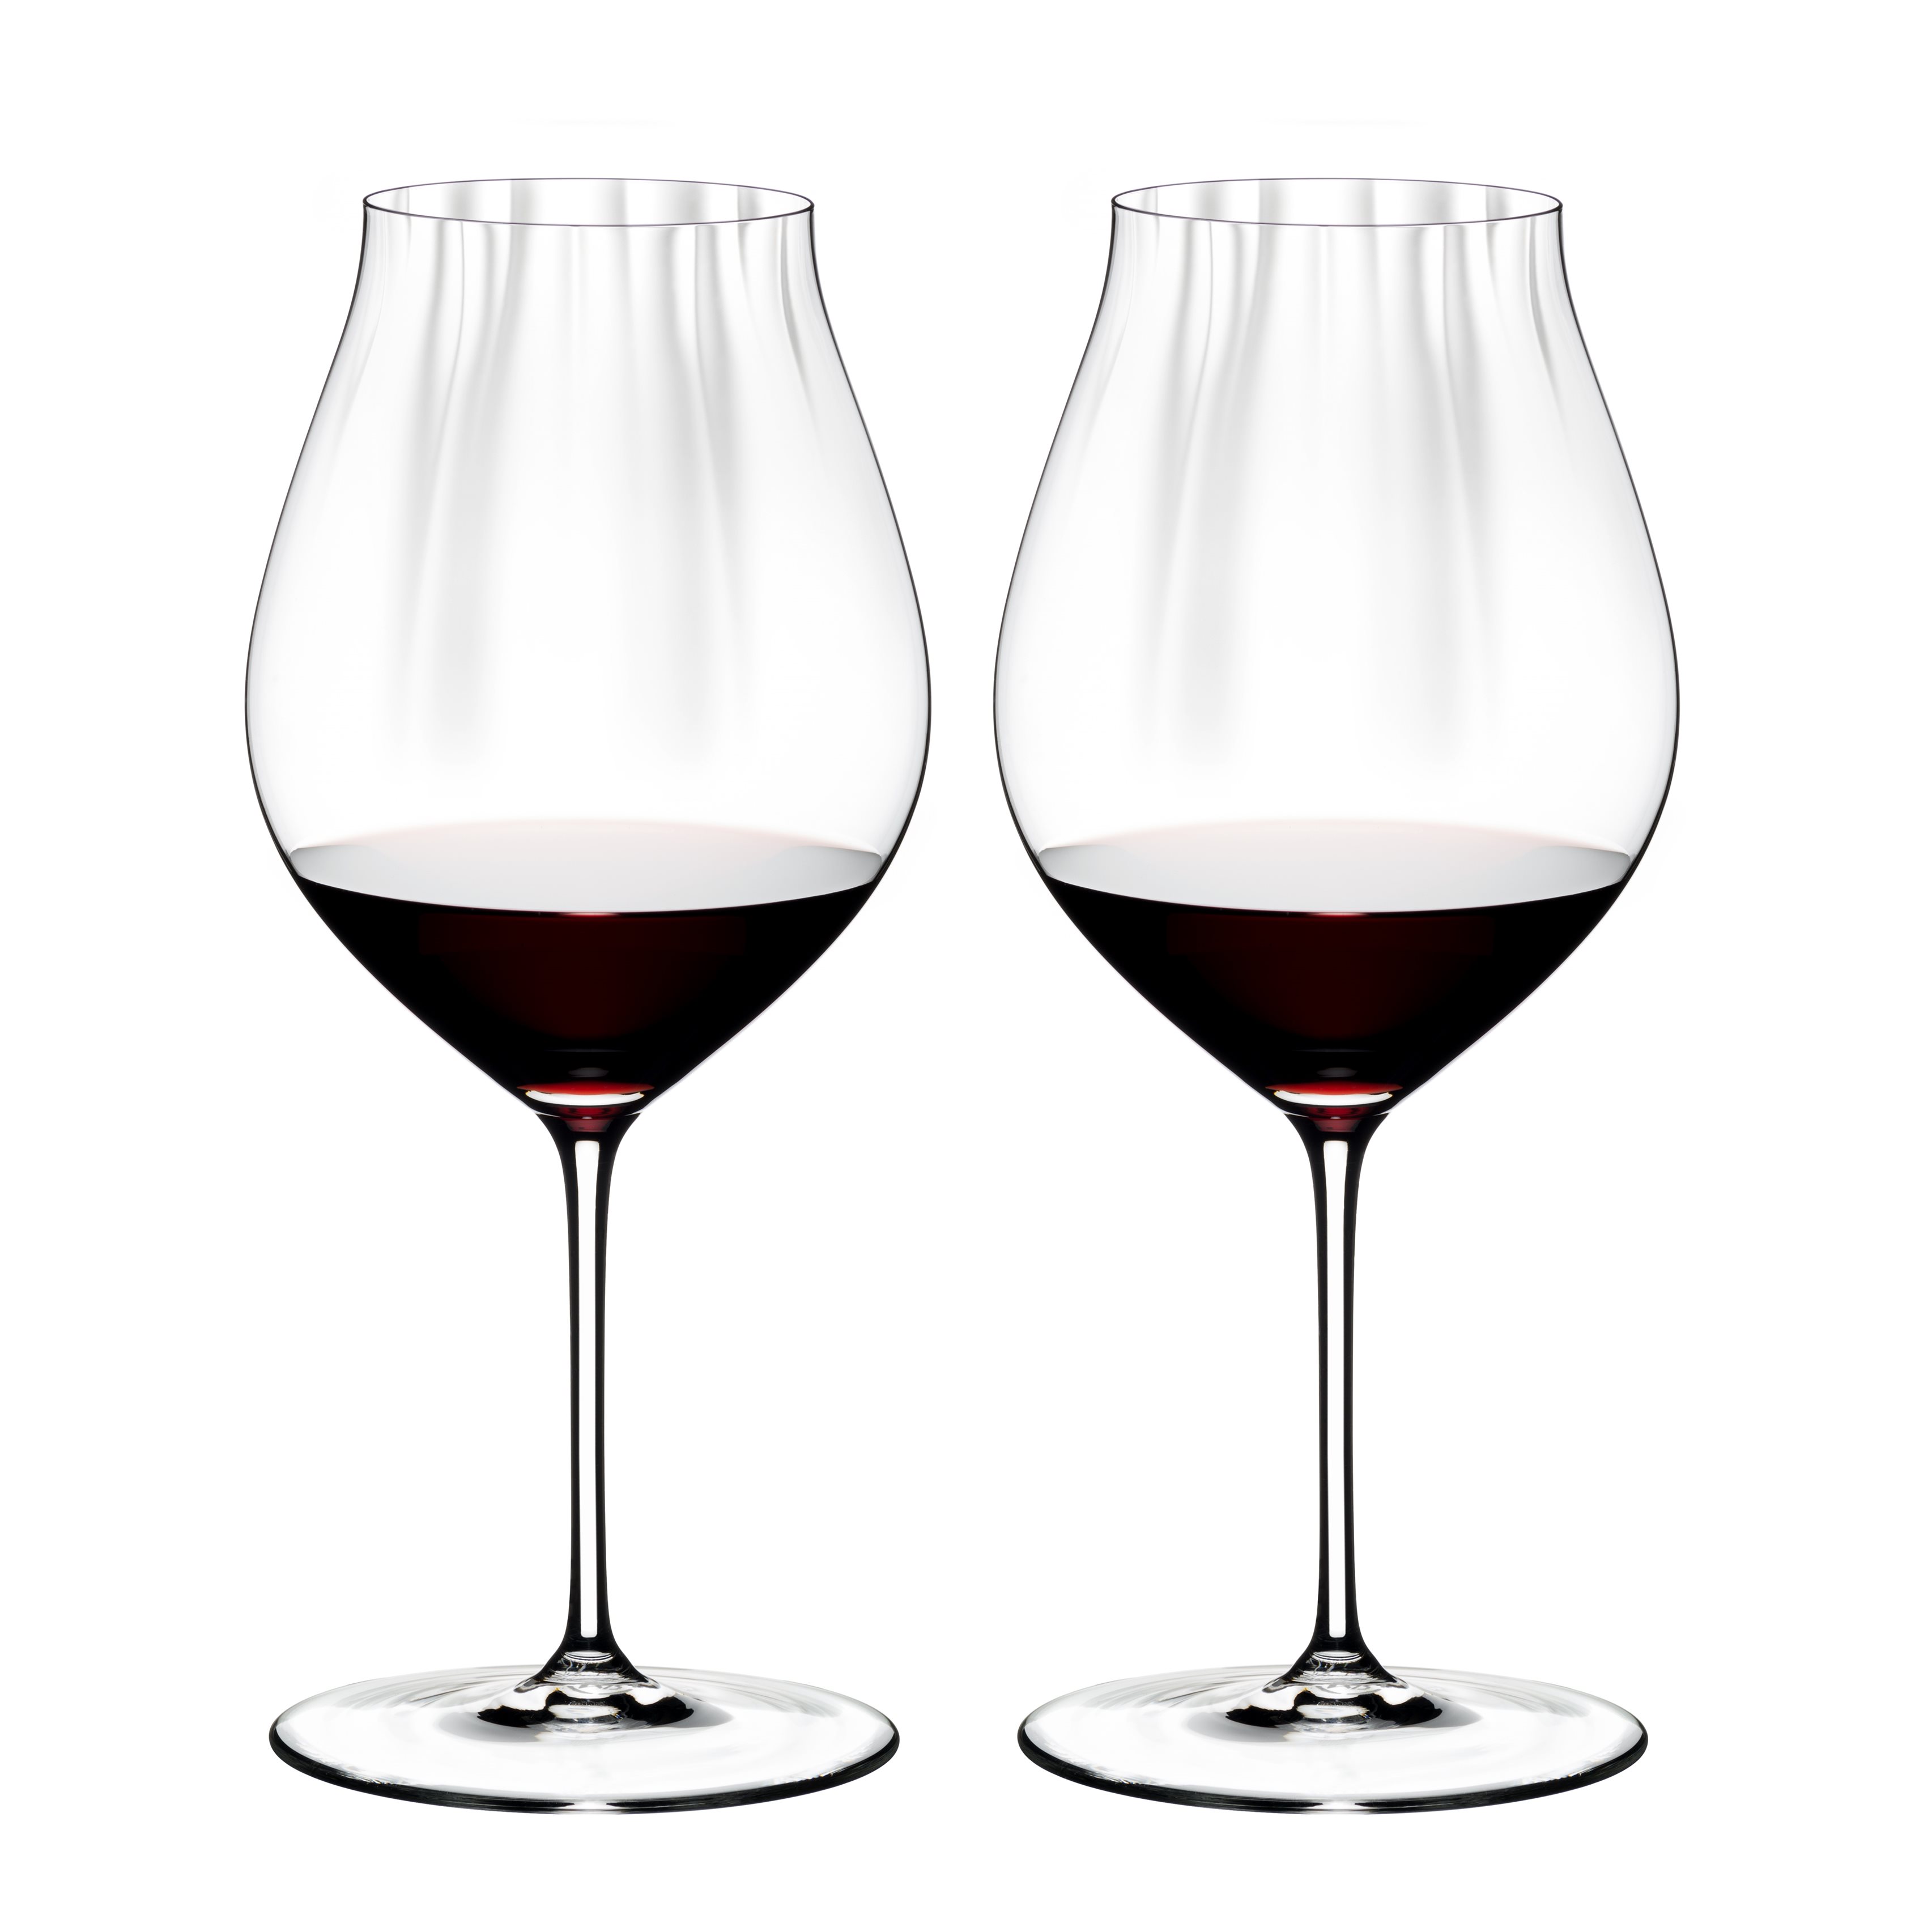 Ontvangst Op risico Bloedbad Riedel Performance Pinot Noir wijnglas - 2 Stuks? | Woldring